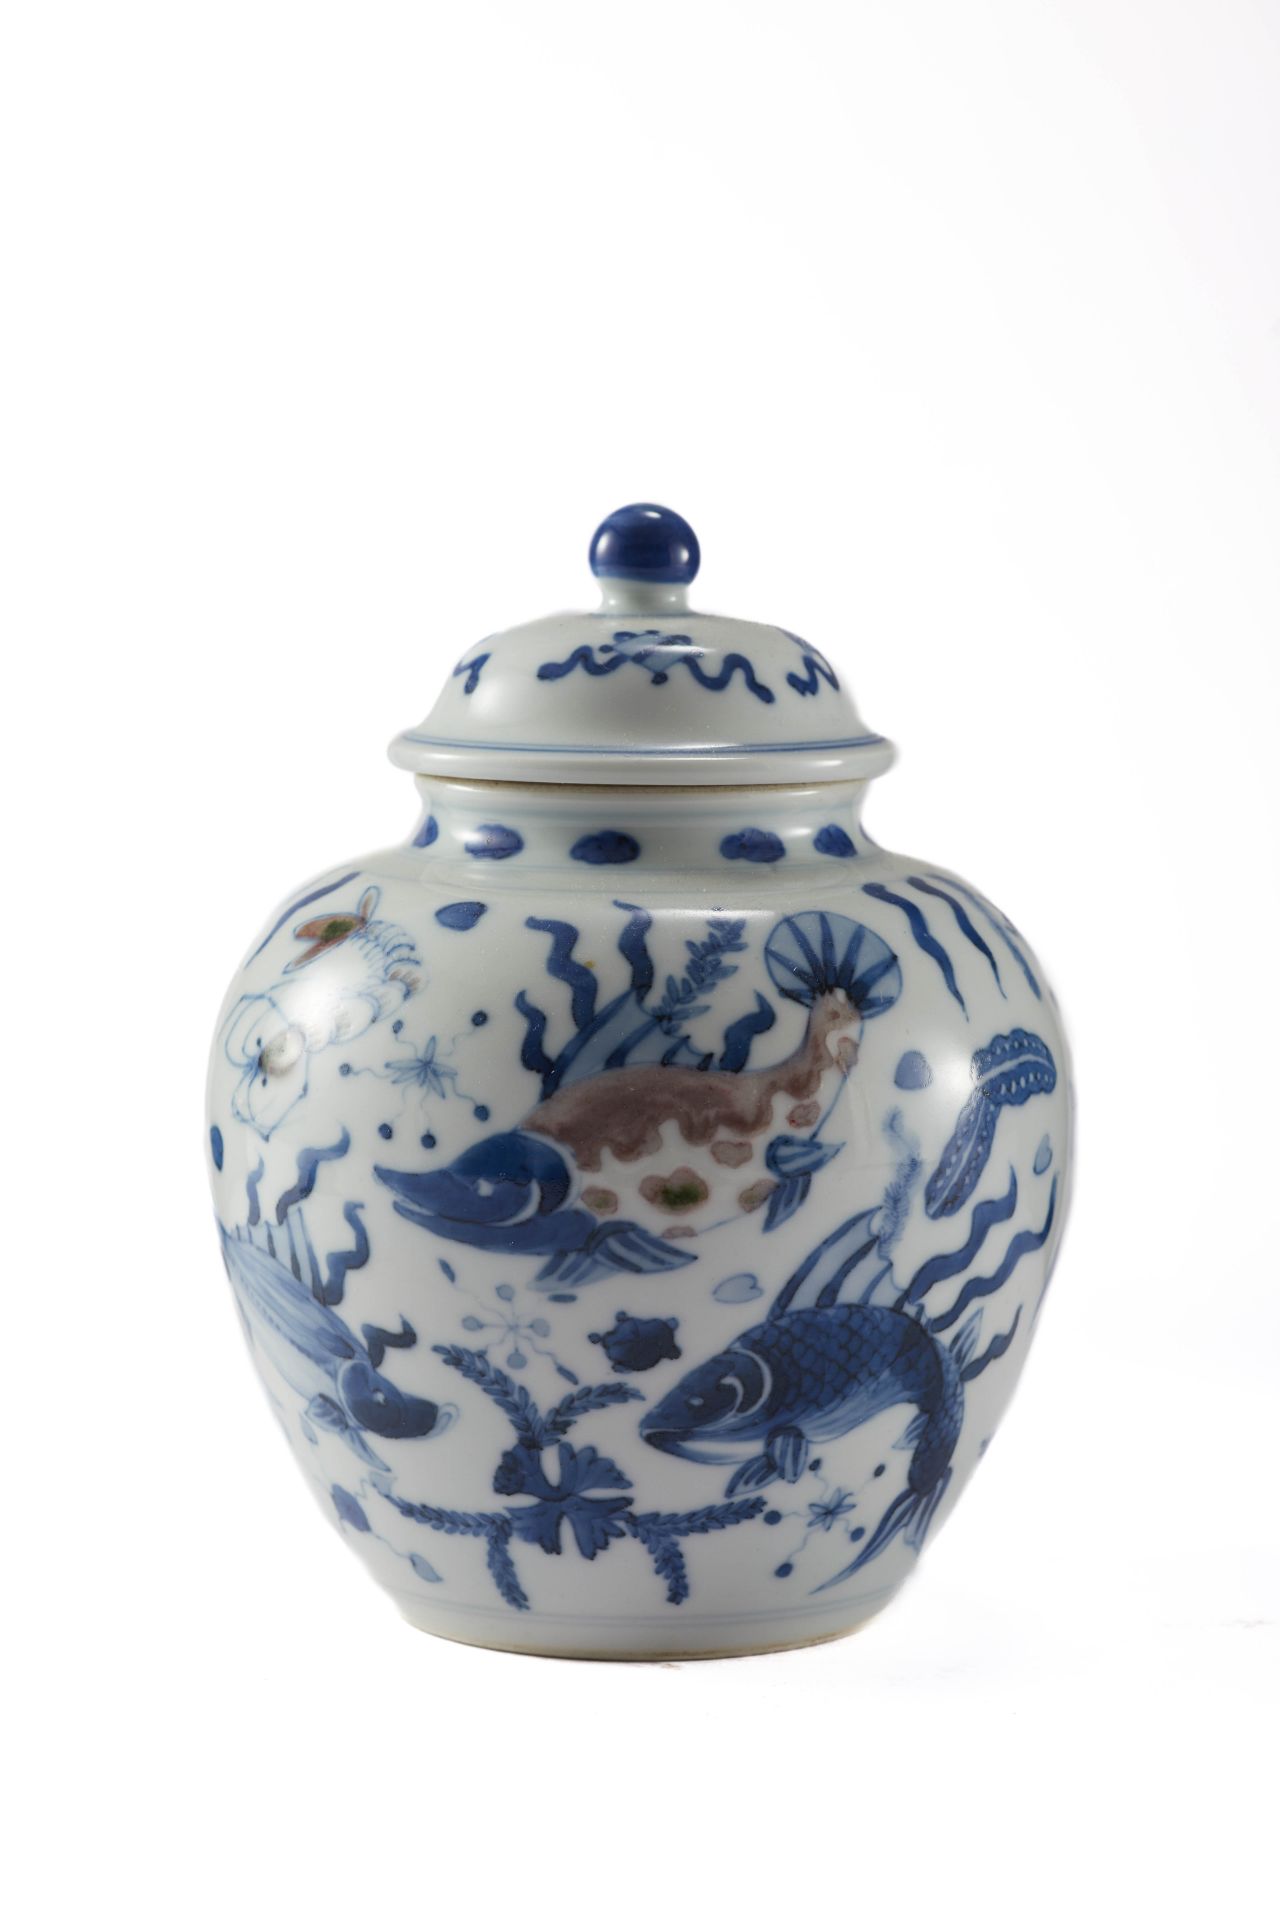 Petite jarre couverte en porcelaine blanche, décoré en bleu cobalt d’une composition aquatique